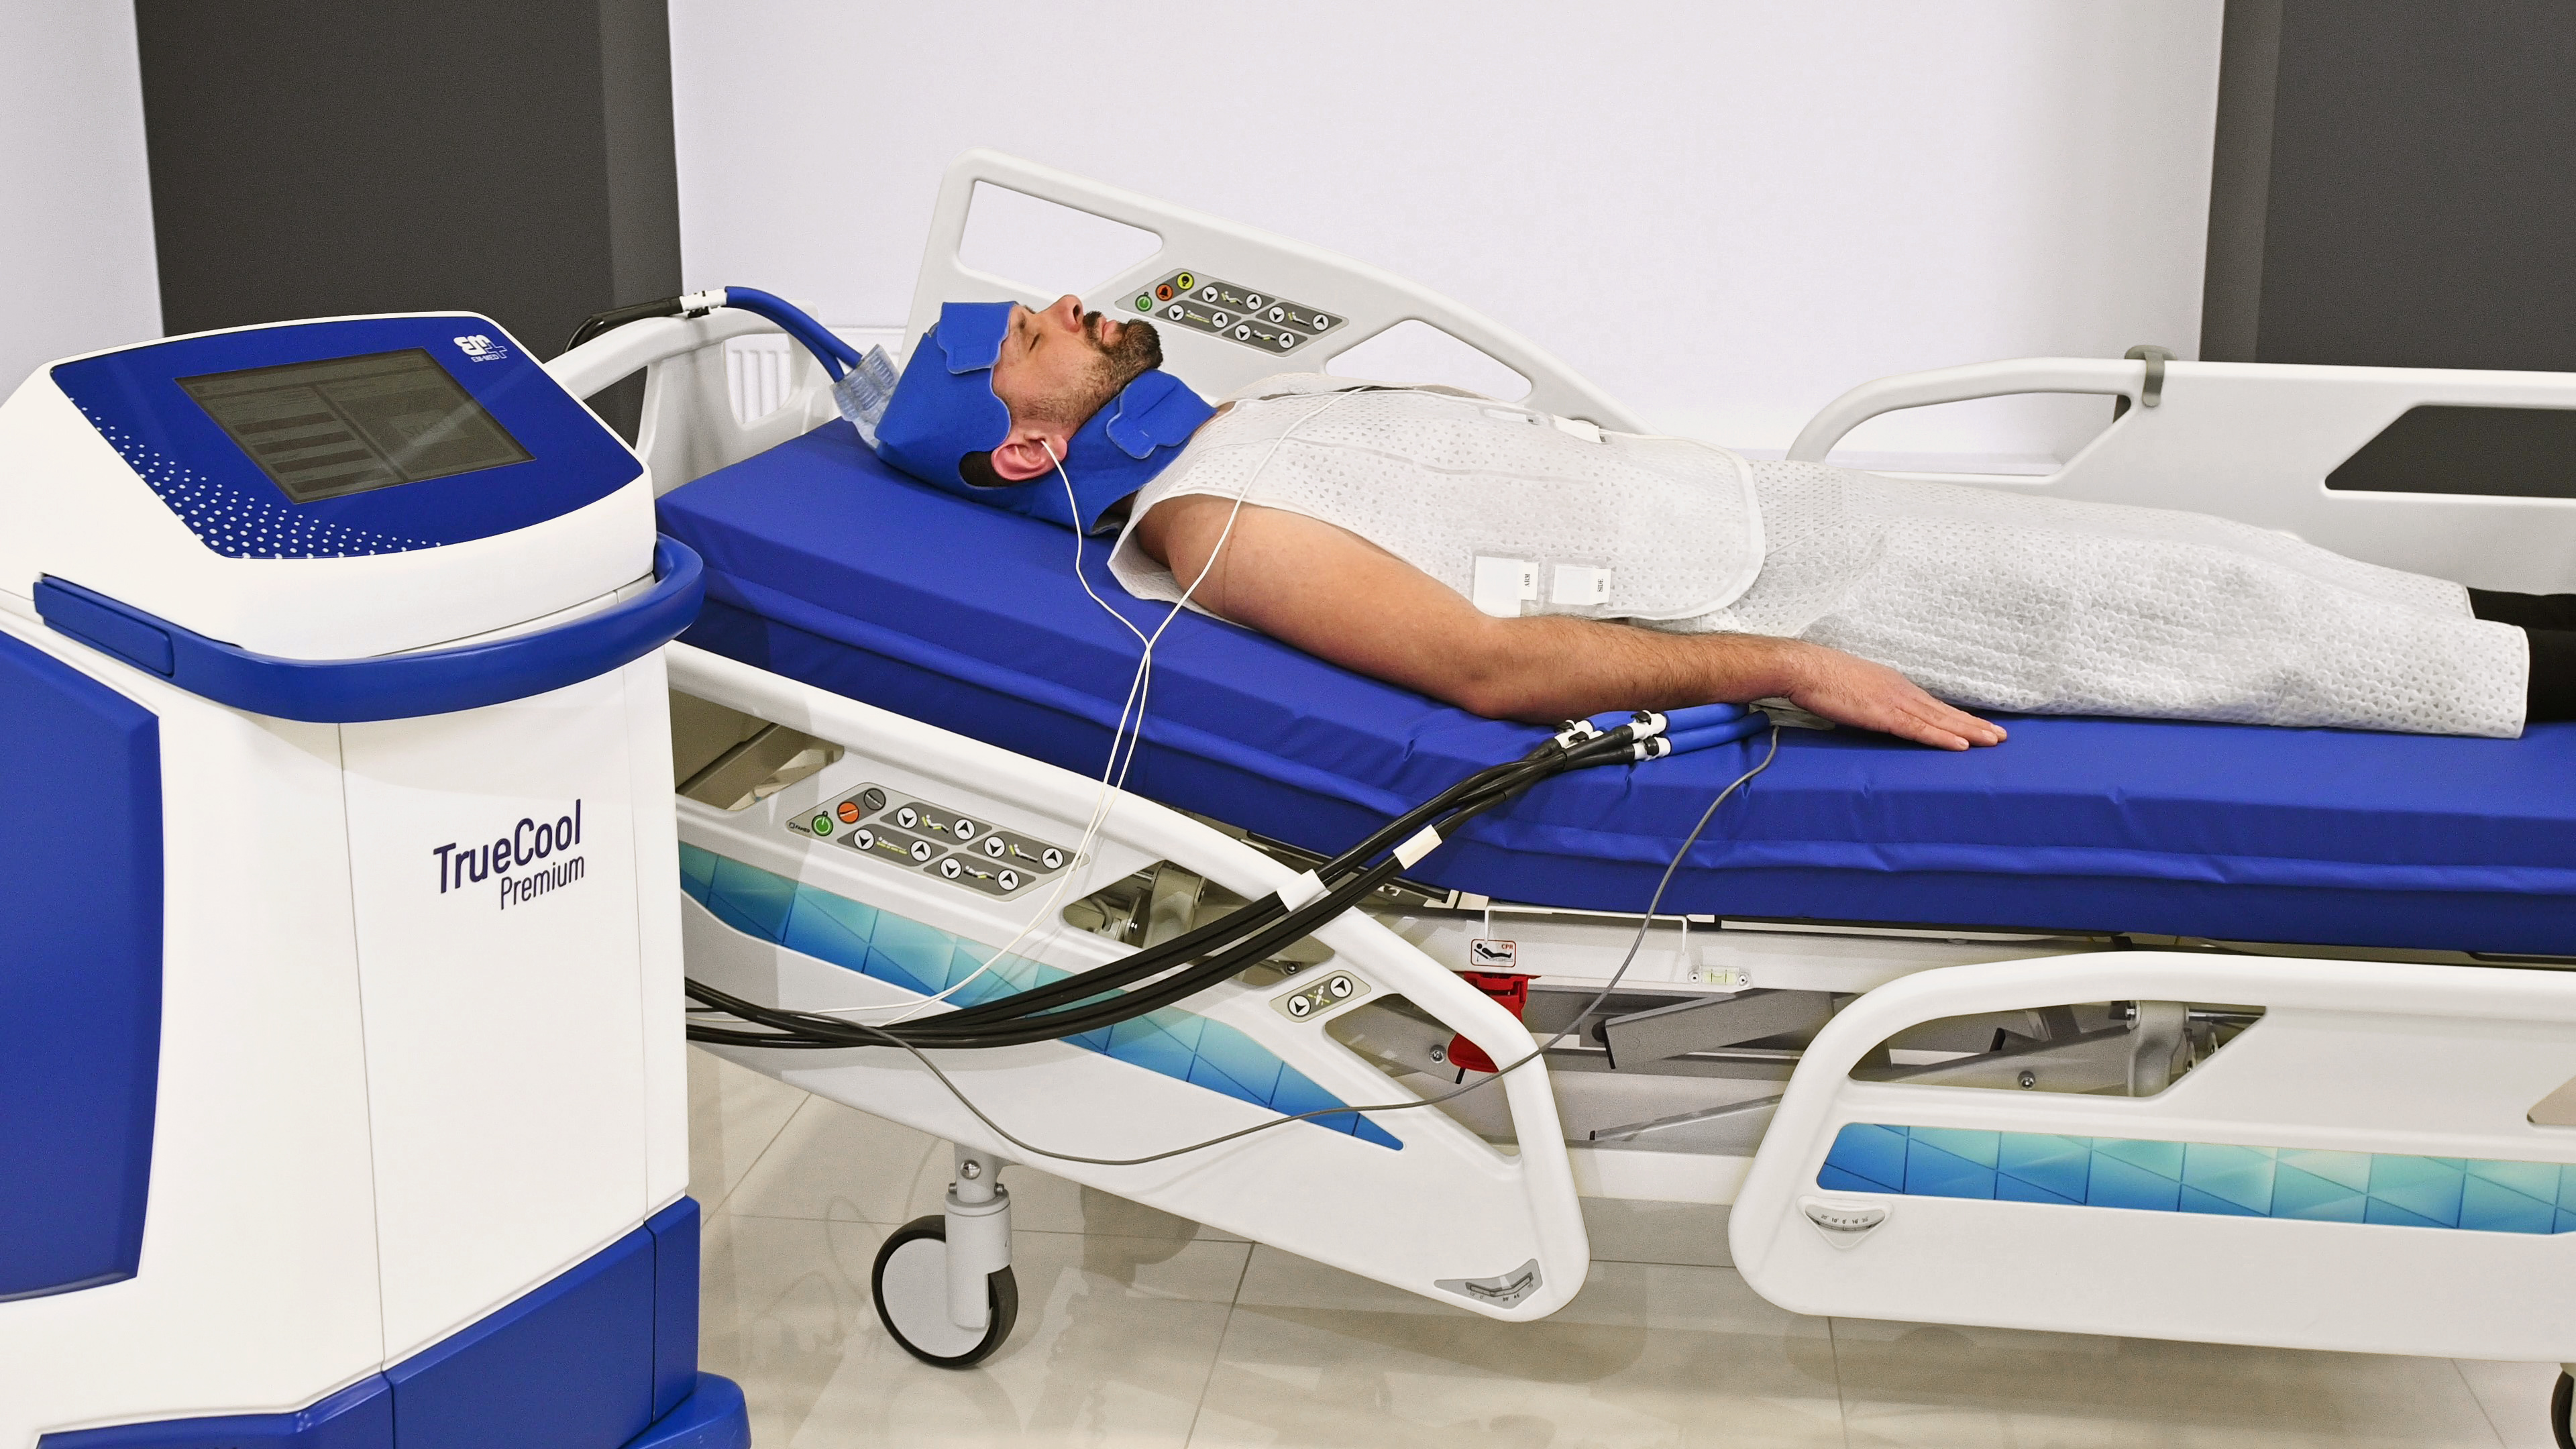 Aparaty do ogrzewania - ochładzania (hipotermii) pacjenta EM-MED TrueCool Premium / TrueCool Lite